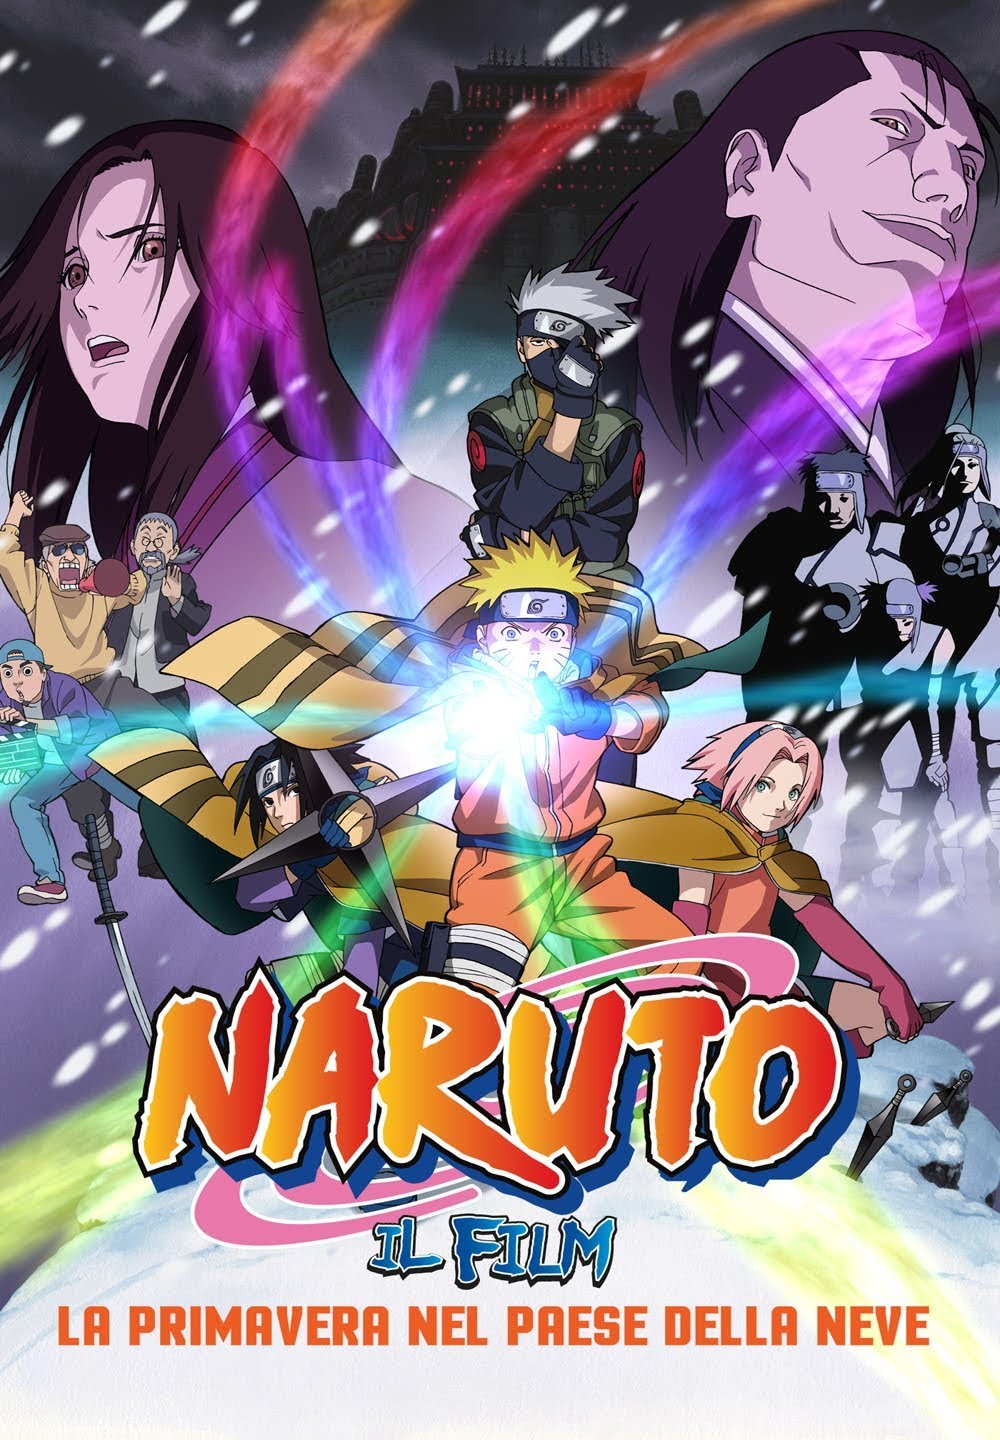 Naruto – Il film: La primavera nel paese della neve [HD] (2015)